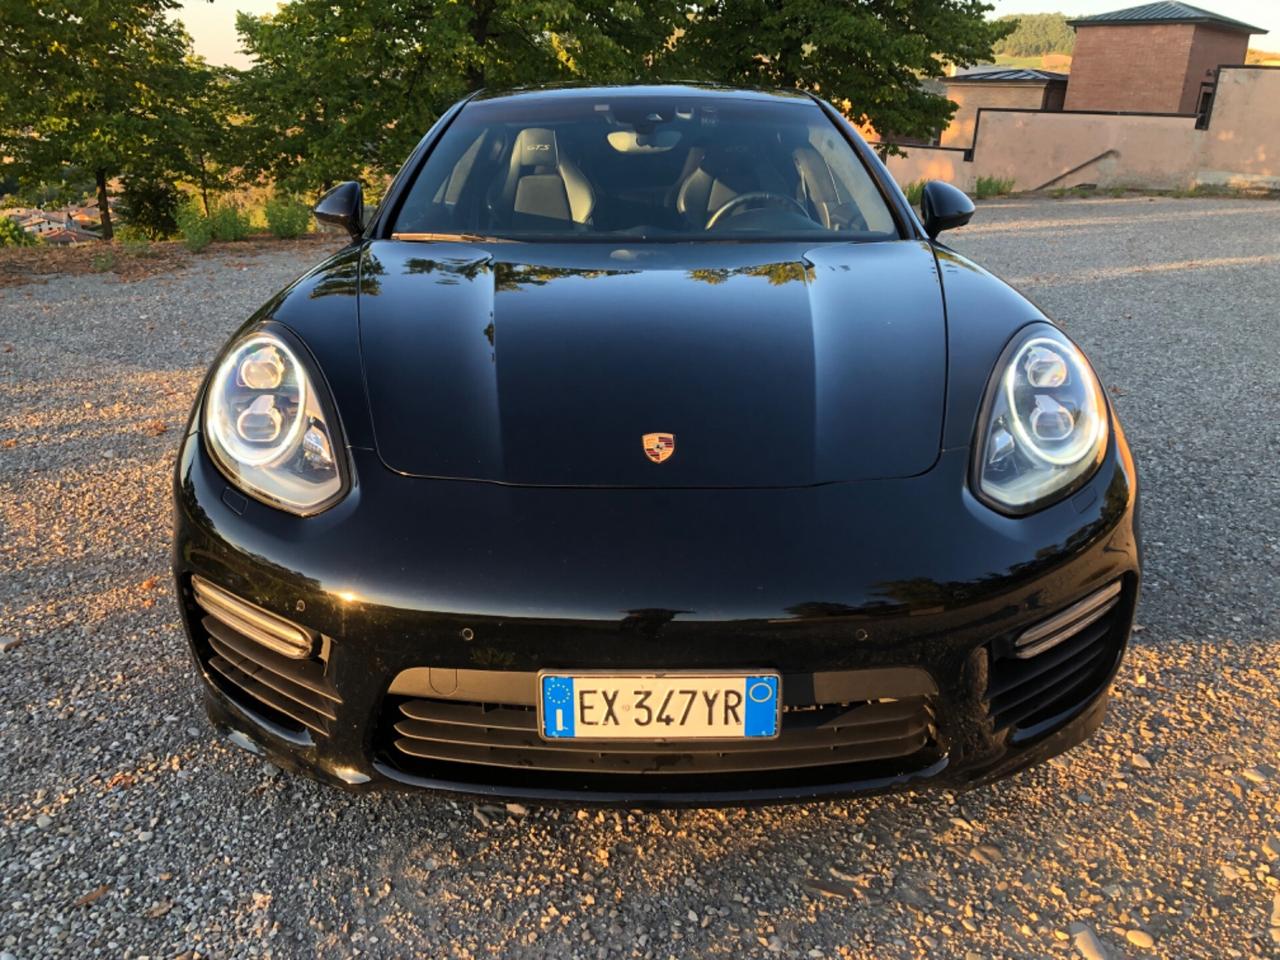 Porsche Panamera GTS 4.8 V8 motore nuovo